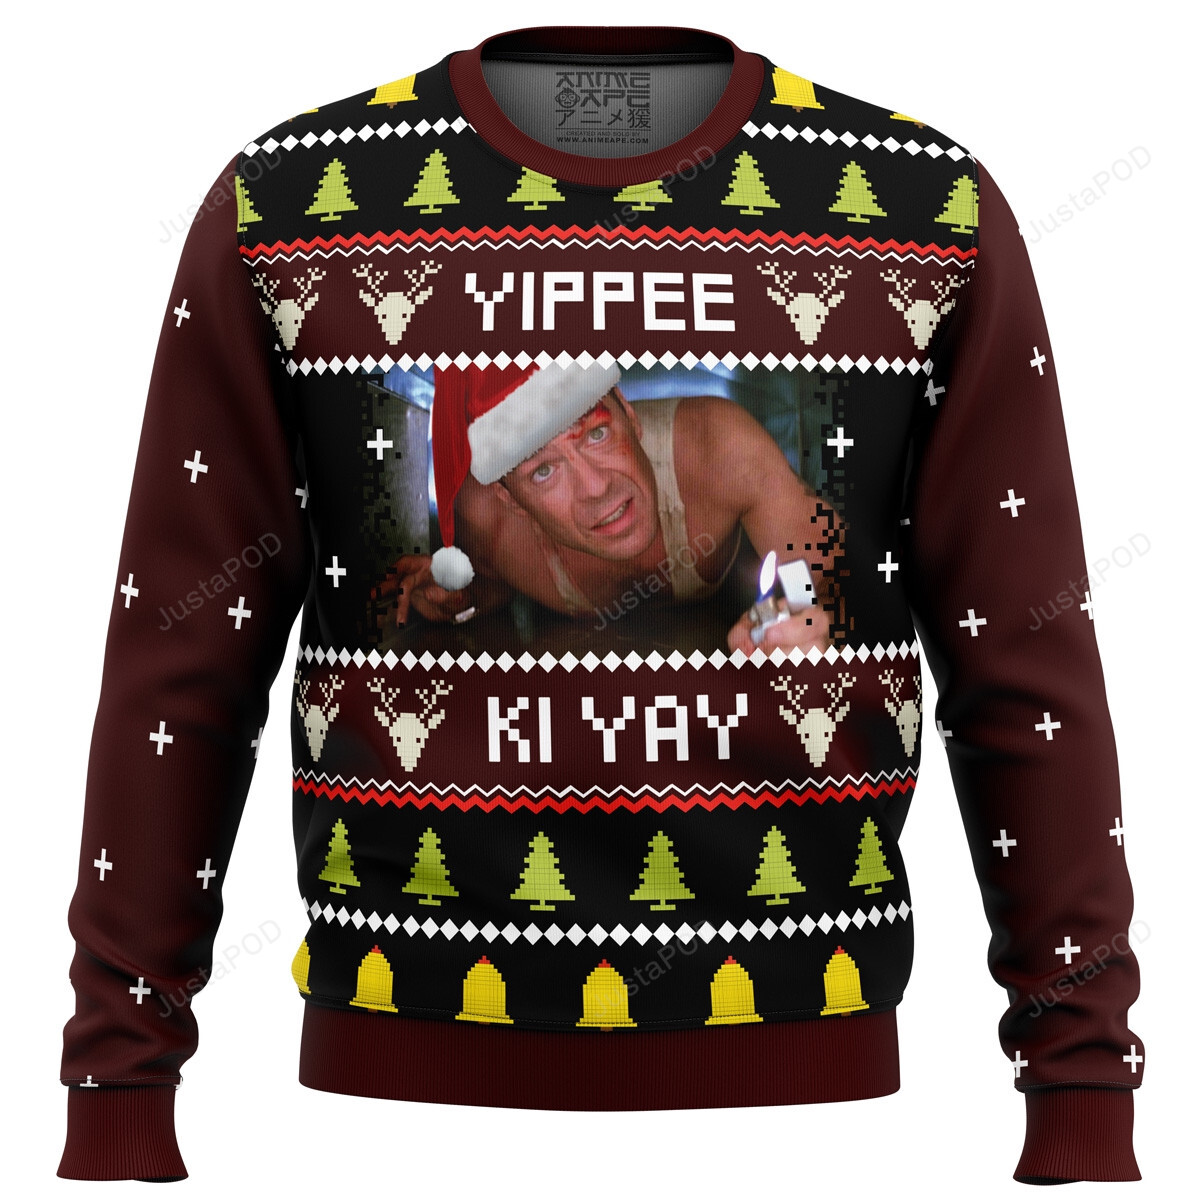 Yippee Ki Yay Ugly Sweater